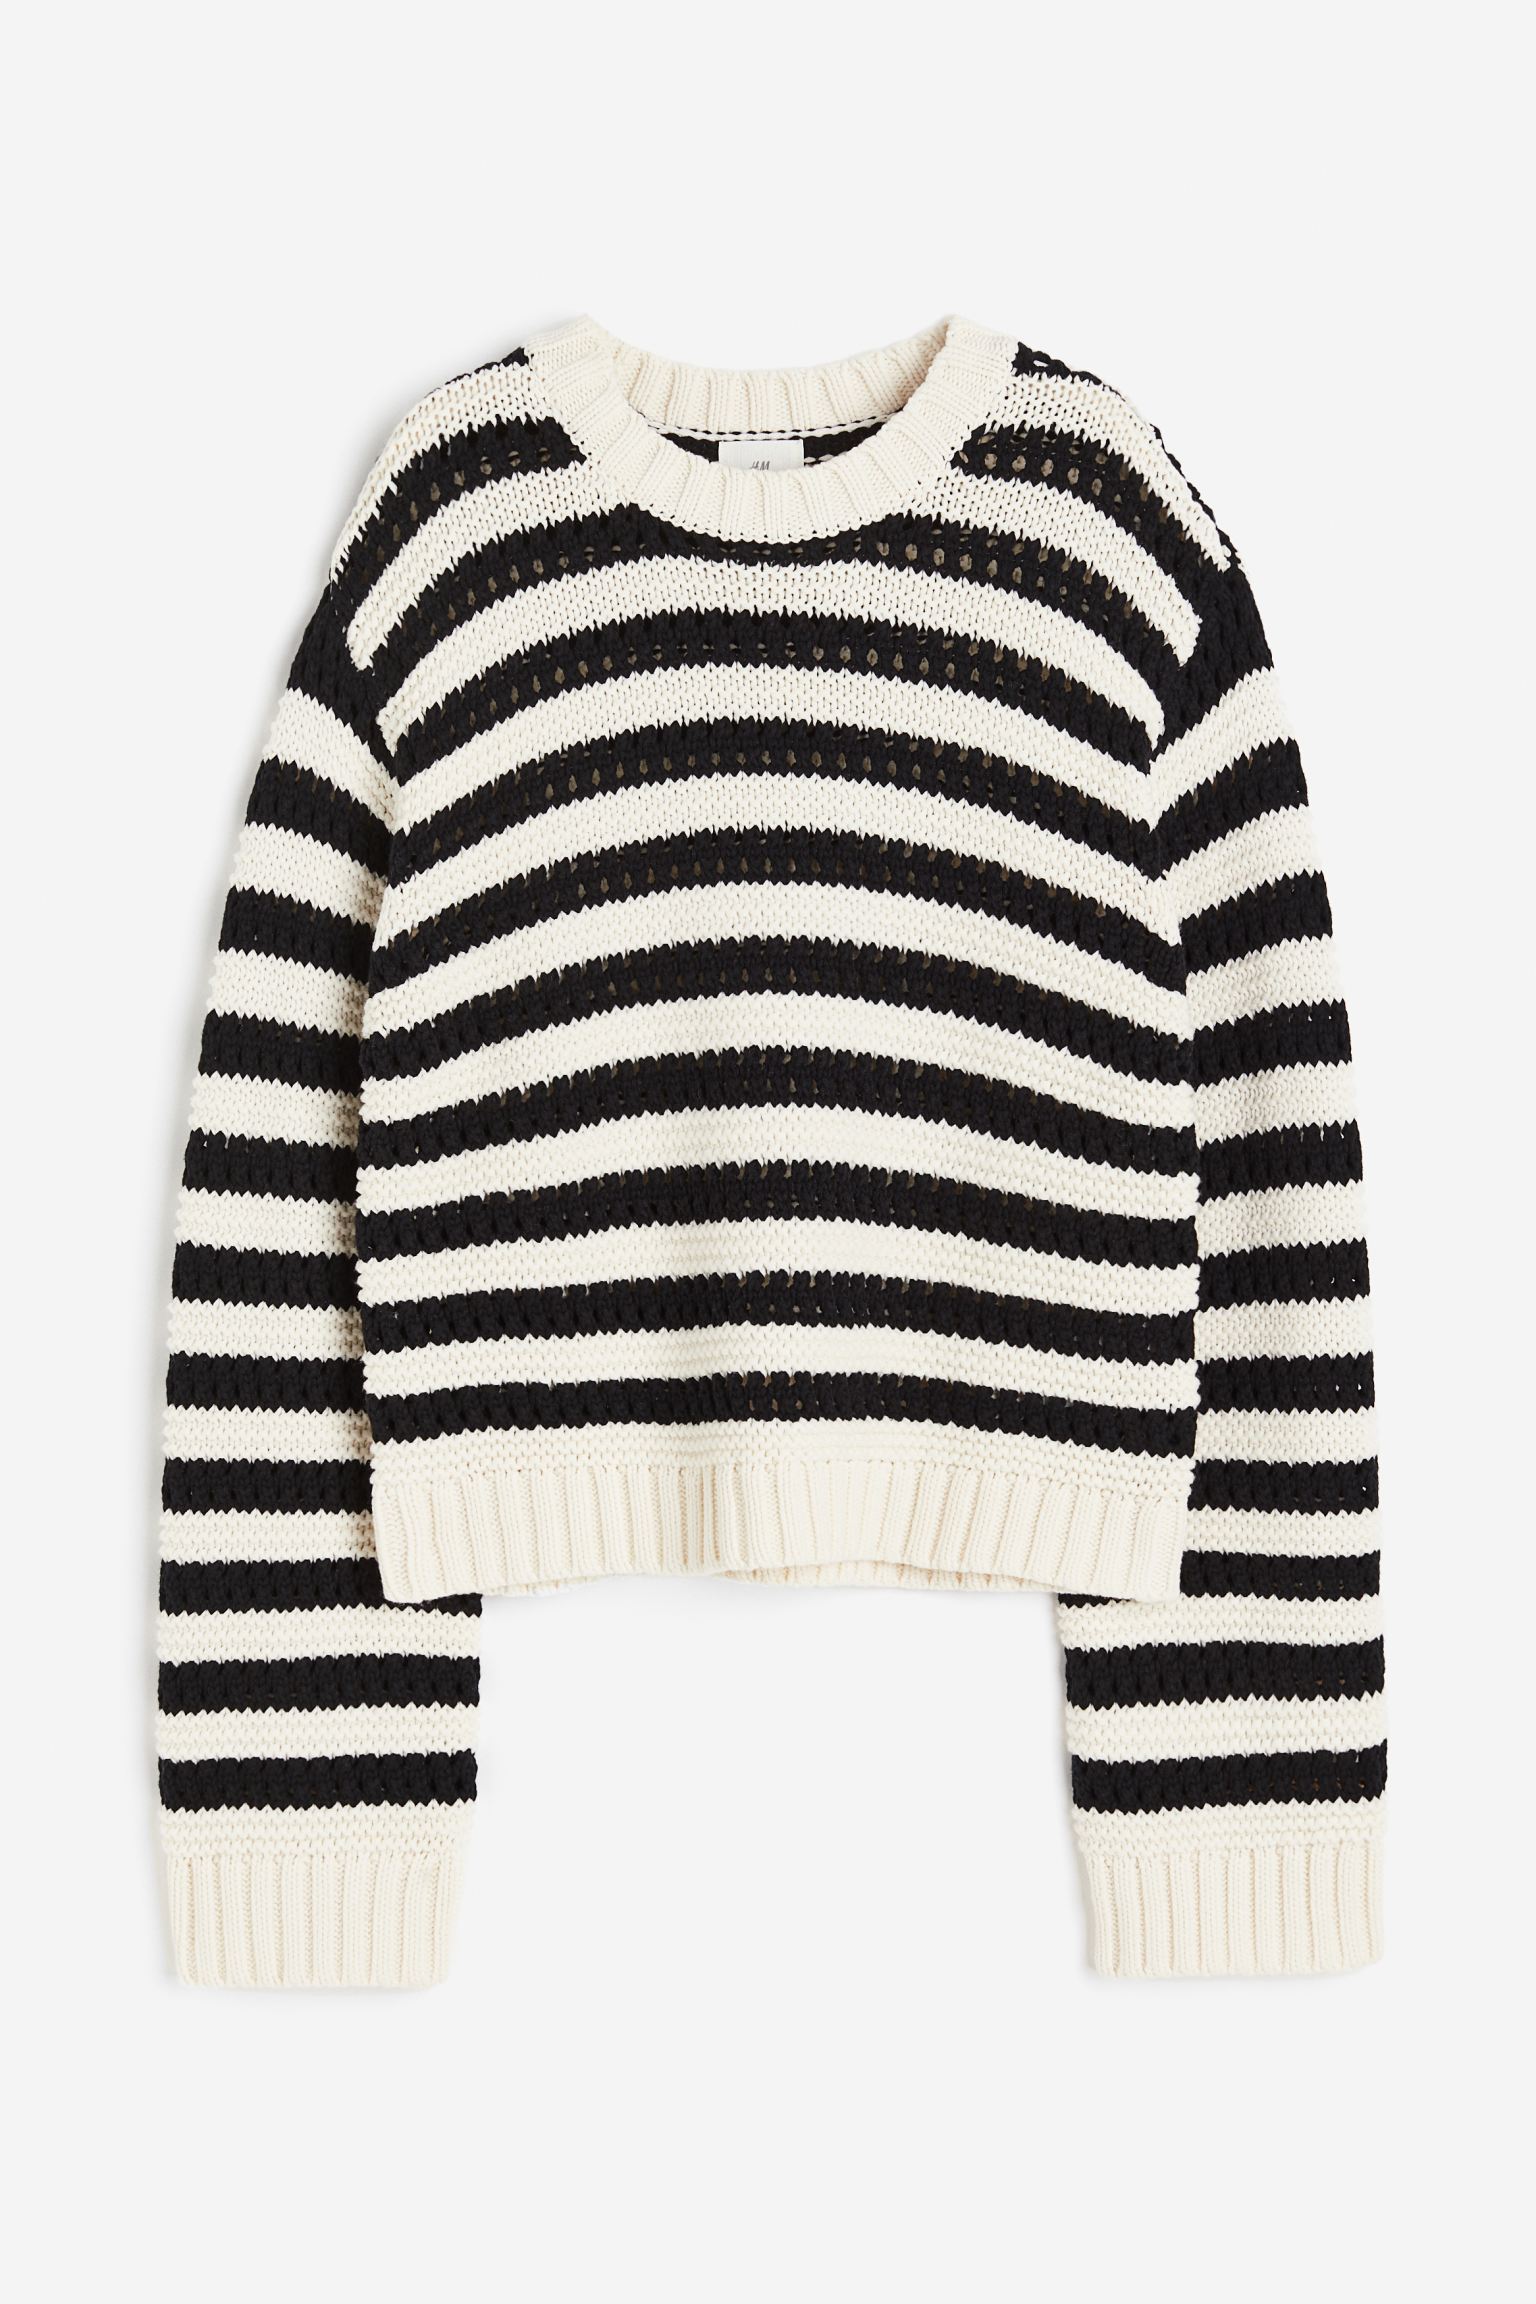 Свитер H&M Hole, кремовый/черный пуловер с круглым вырезом из тонкого ажурного трикотажа 4 года 102 см бежевый